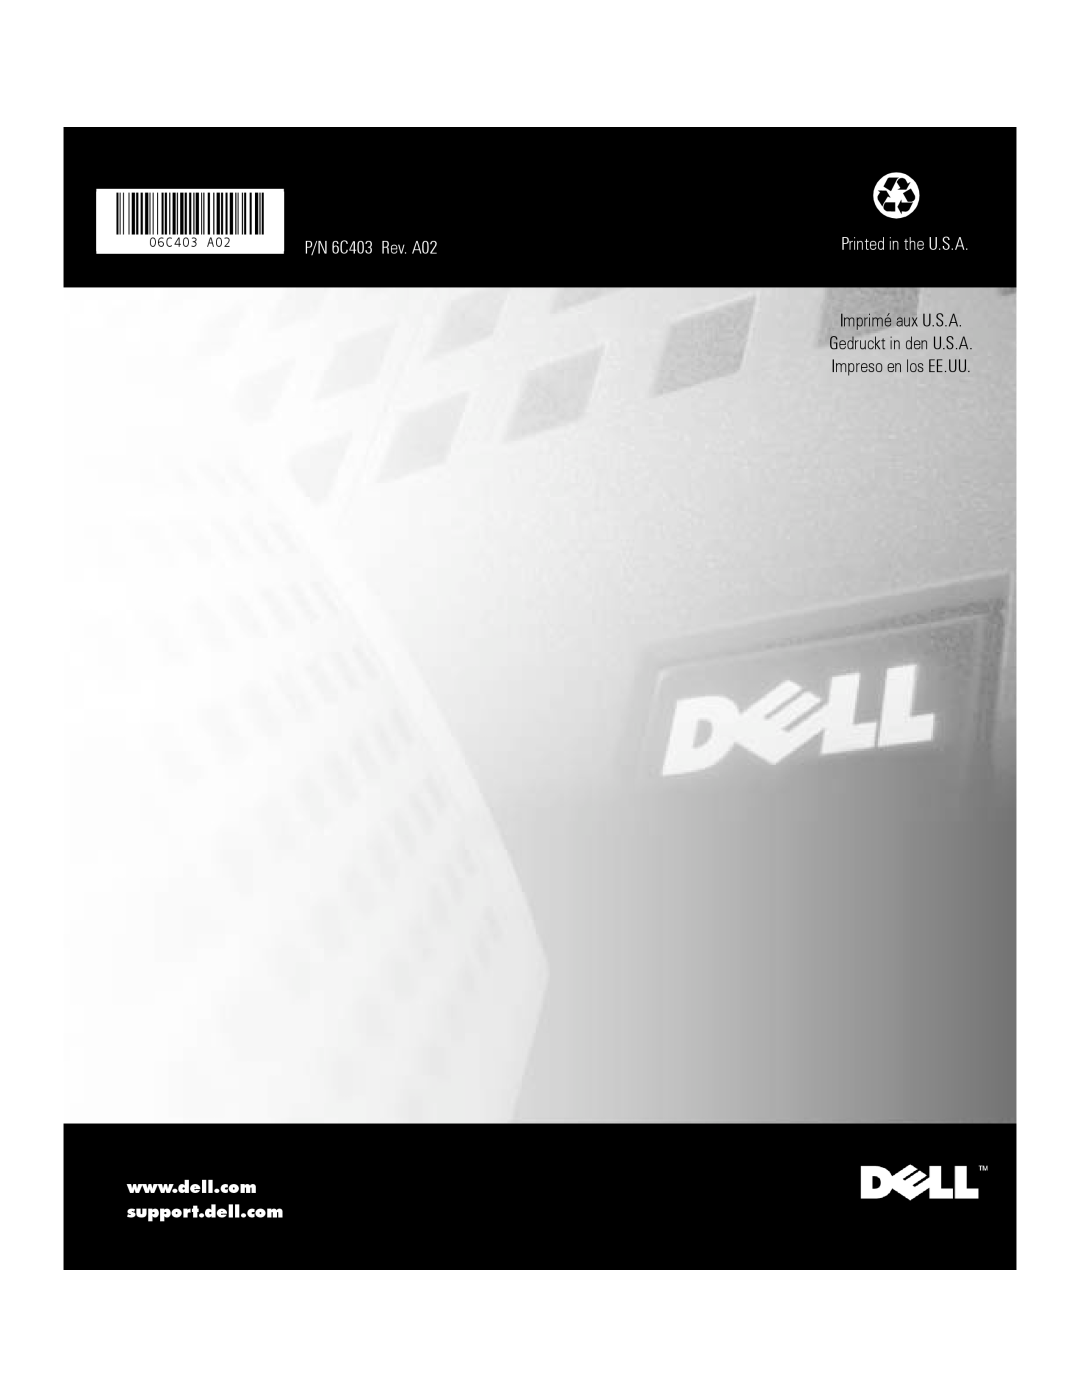 Dell FE200, FE100 P/N 6C403 Rev. A02, Imprimé aux U.S.A Gedruckt in den U.S.A, Impreso en los EE.UU, Printed in the U.S.A 